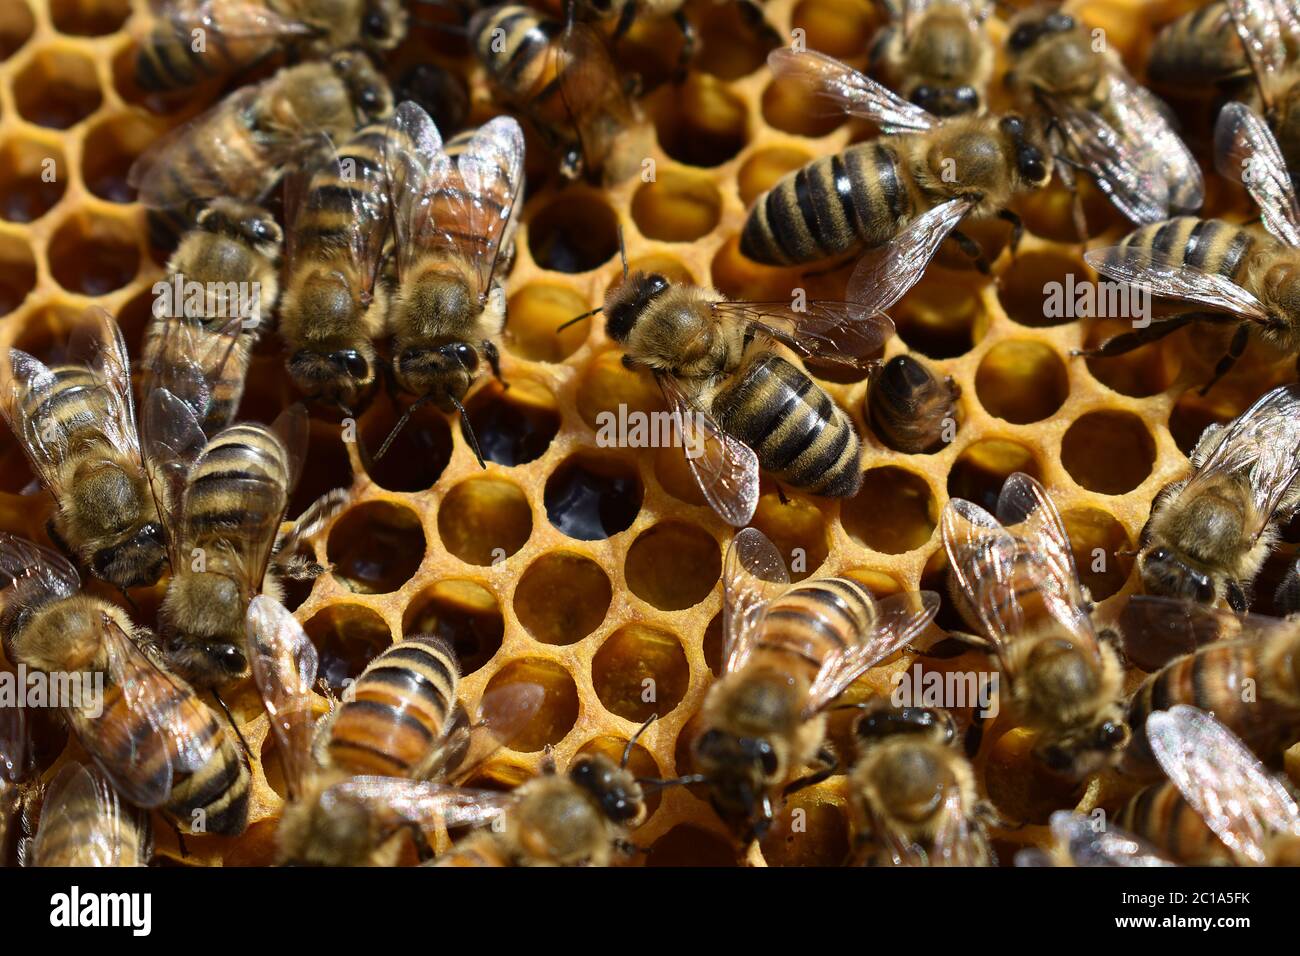 Les abeilles dans la ruche collectent du miel et du pollen pour leur progéniture, et les abeilles y sont engleuses Banque D'Images